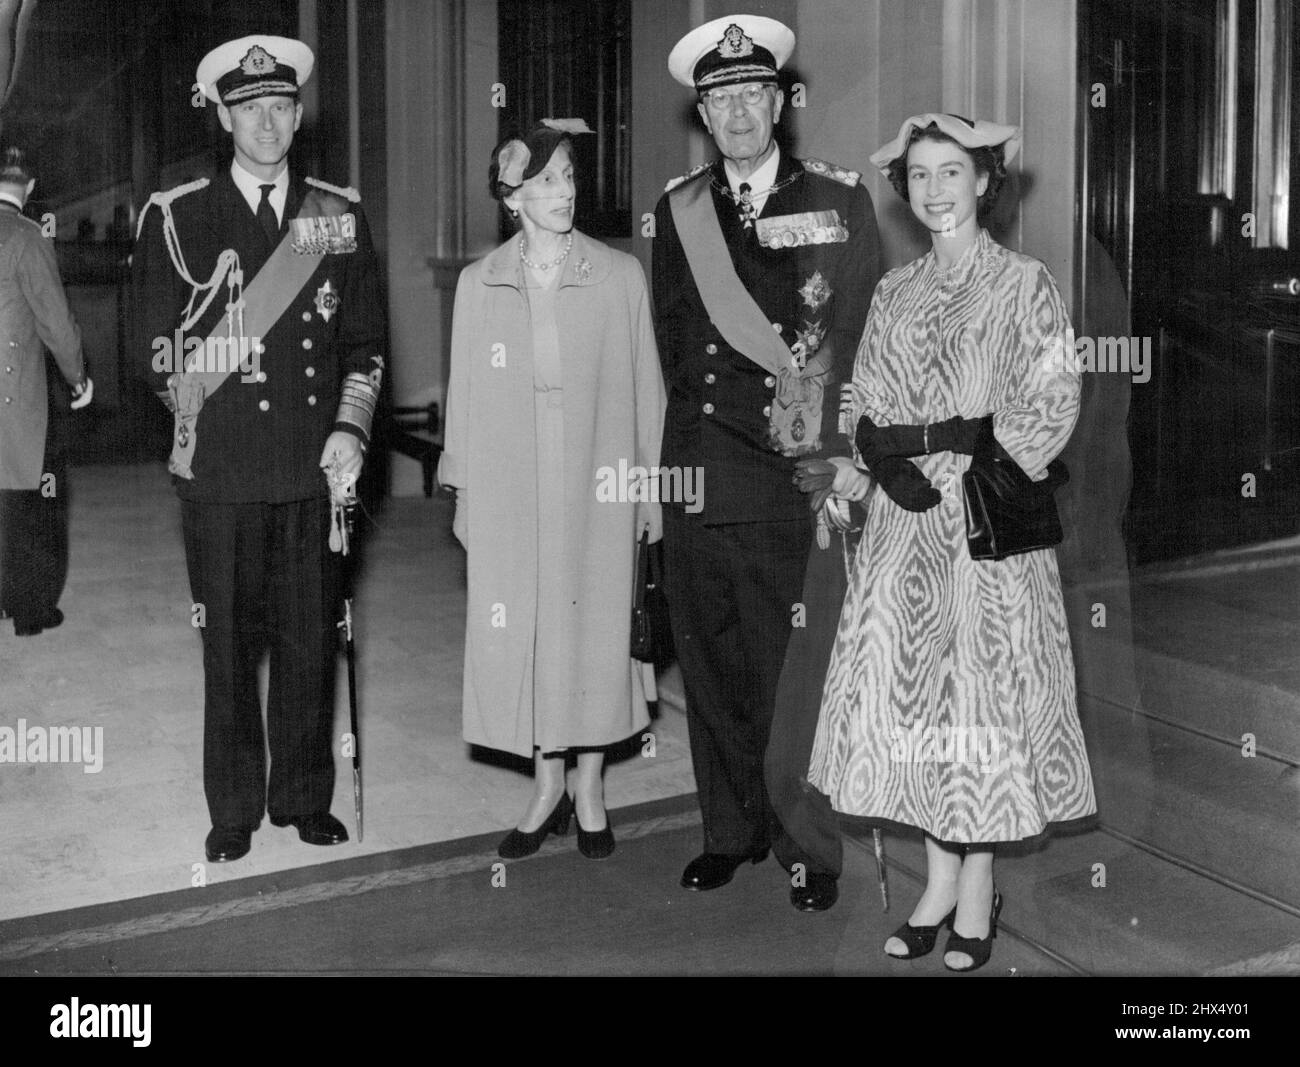 Königliche Besucher: Die Königin und der Herzog von Edinburgh, die ihre Gäste am Westminster Pier begrüßten, gesehen mit König Gustav Adolf und Königin Louise von Schweden nach ihrer Ankunft im Palast. Der Mantel, der das ganze Gerede verursachte. Der Mantel, den Königin Elizabeth trug, um König und Königin von Schweden in London willkommen zu heißen, hat britische Frauen zum Reden gebracht. Eine Frau sagte, dass der Mantel der Königin genau so war, wie die Toffee-Whirl-Kinder essen. 28. Juni 1954. Stockfoto